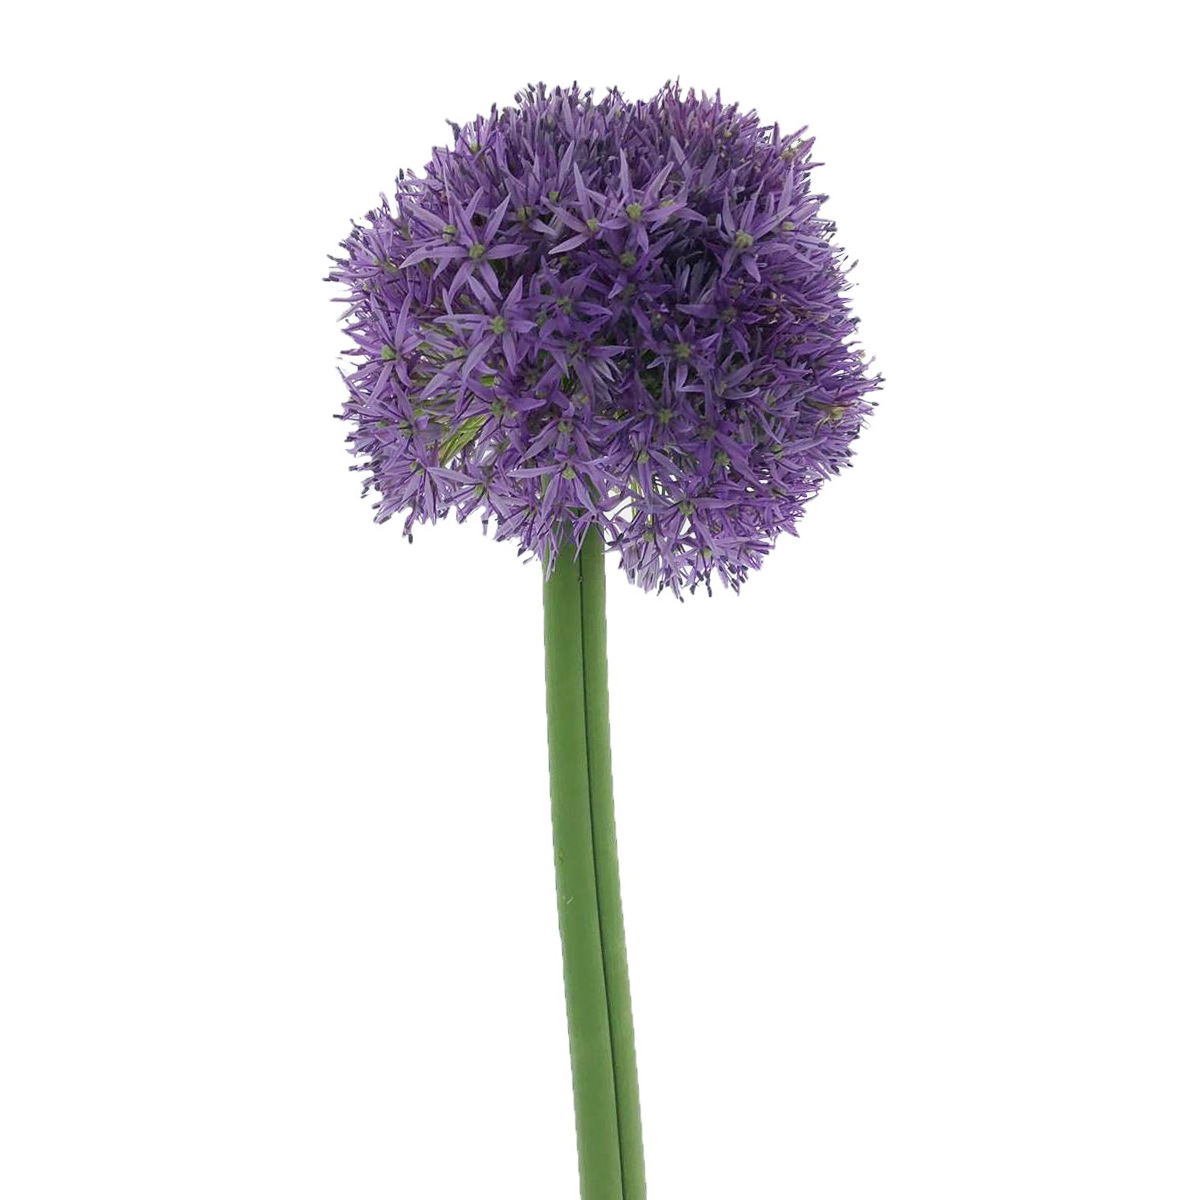 Allium - Giant                                    